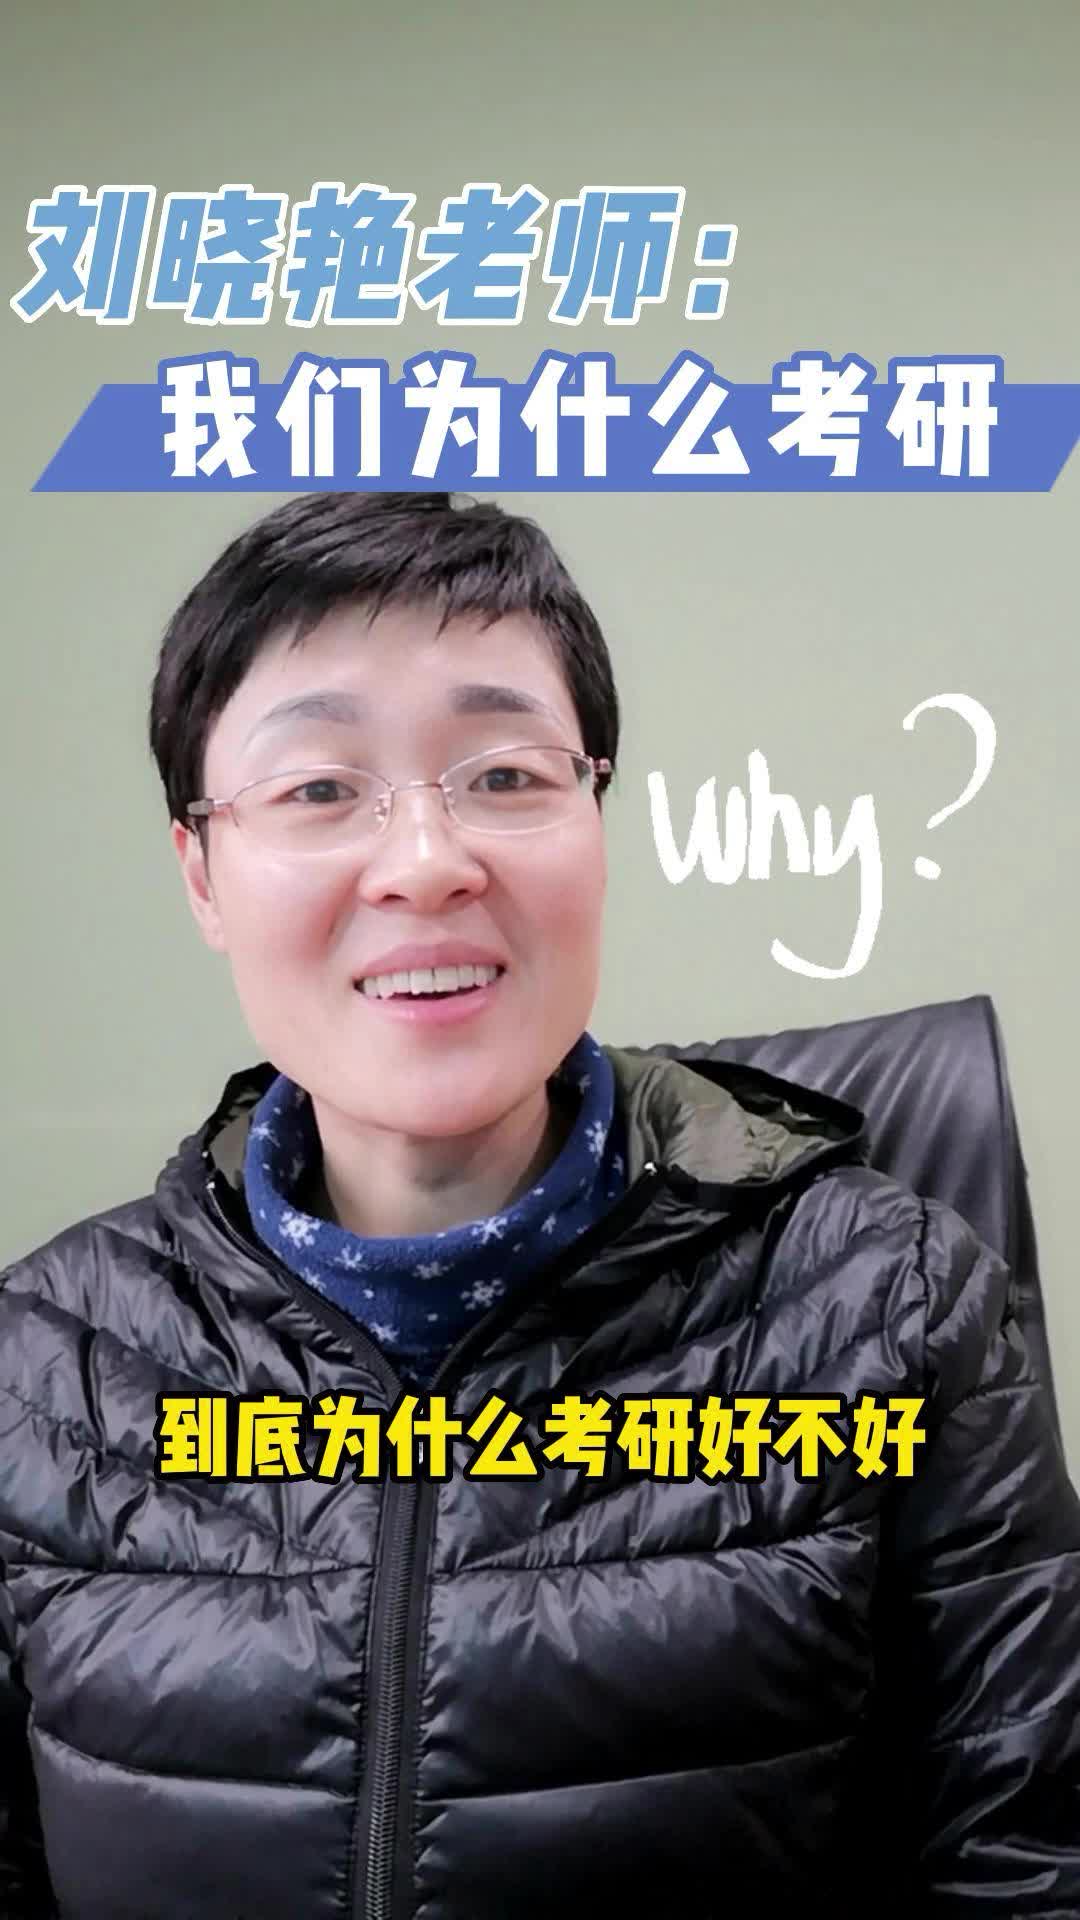 刘晓艳老师:考研真的有用吗?我们为什么考研